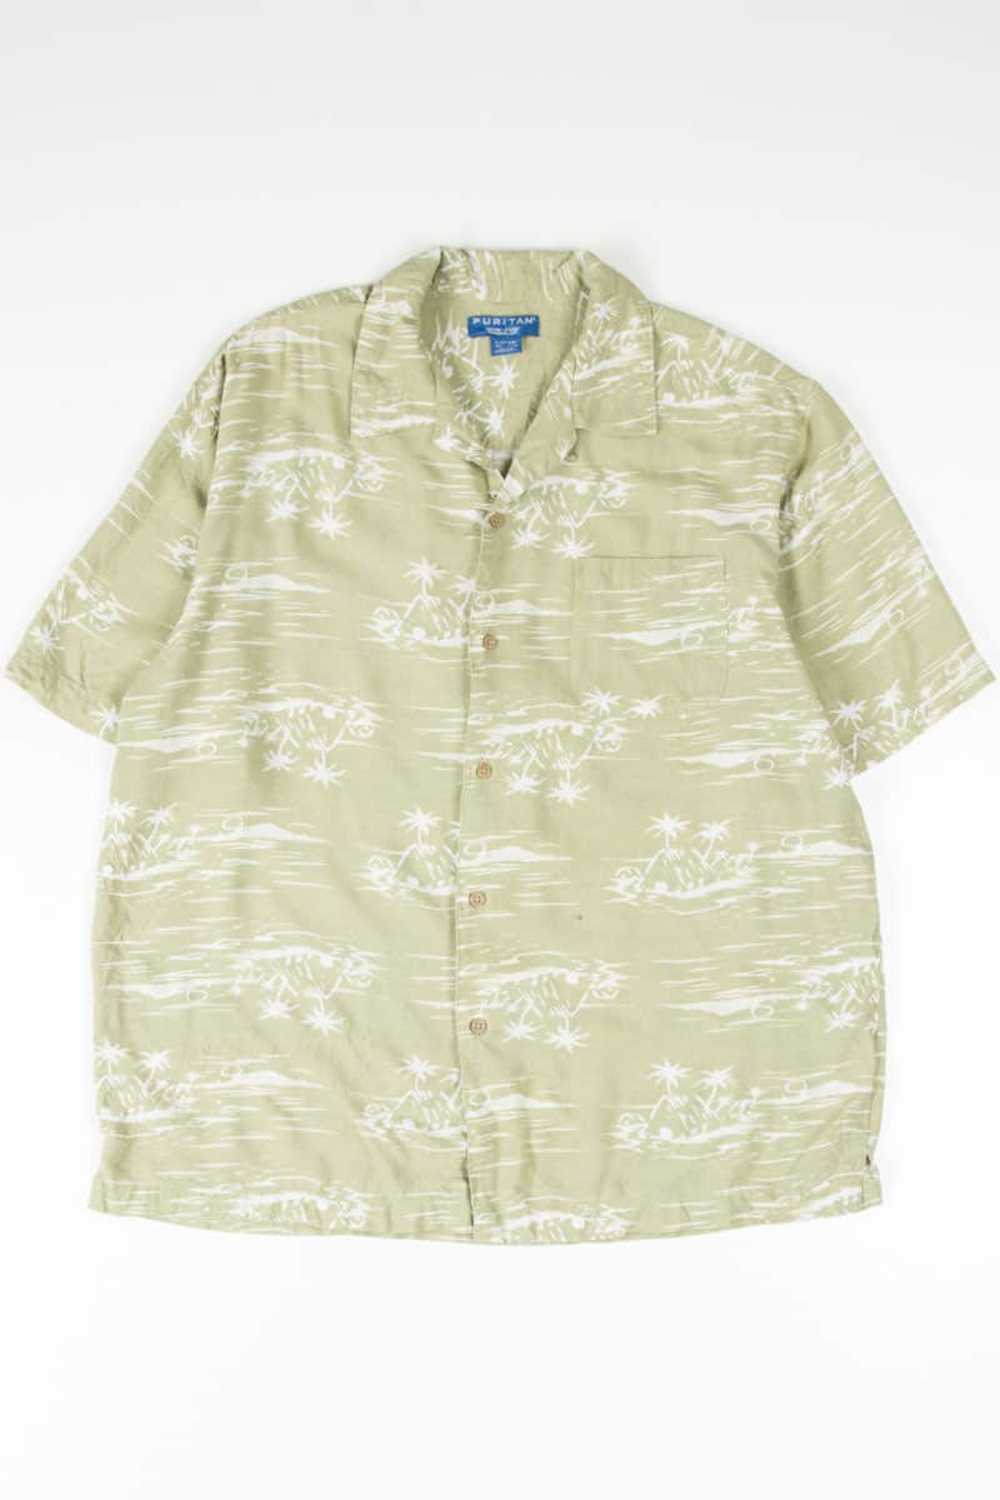 Green Island Hawaiian Shirt - image 2